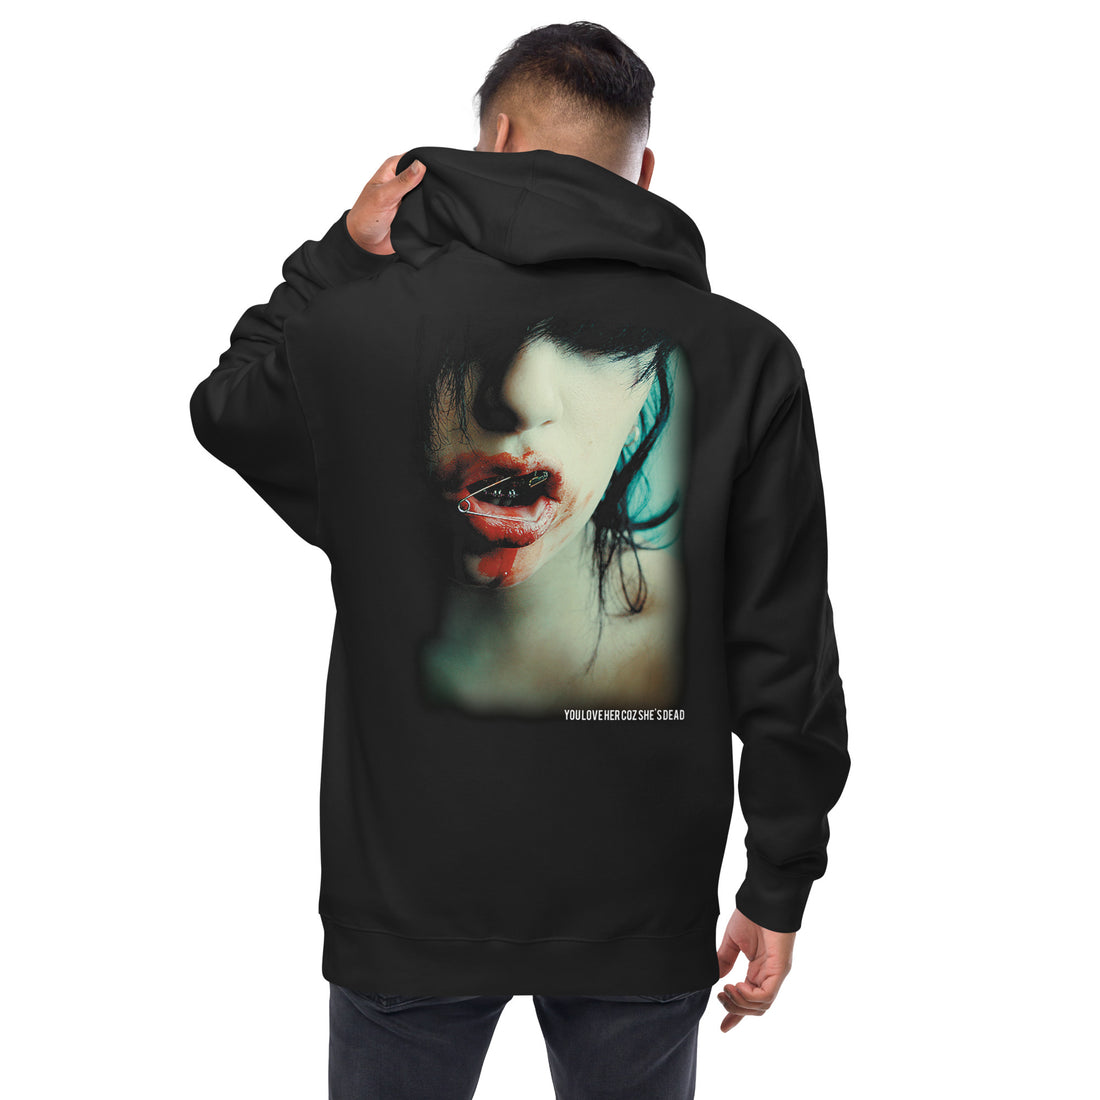 YOU LOVE HER - ALBUM COVER Unisex fleece zip up hoodie - YOU LOVE HER